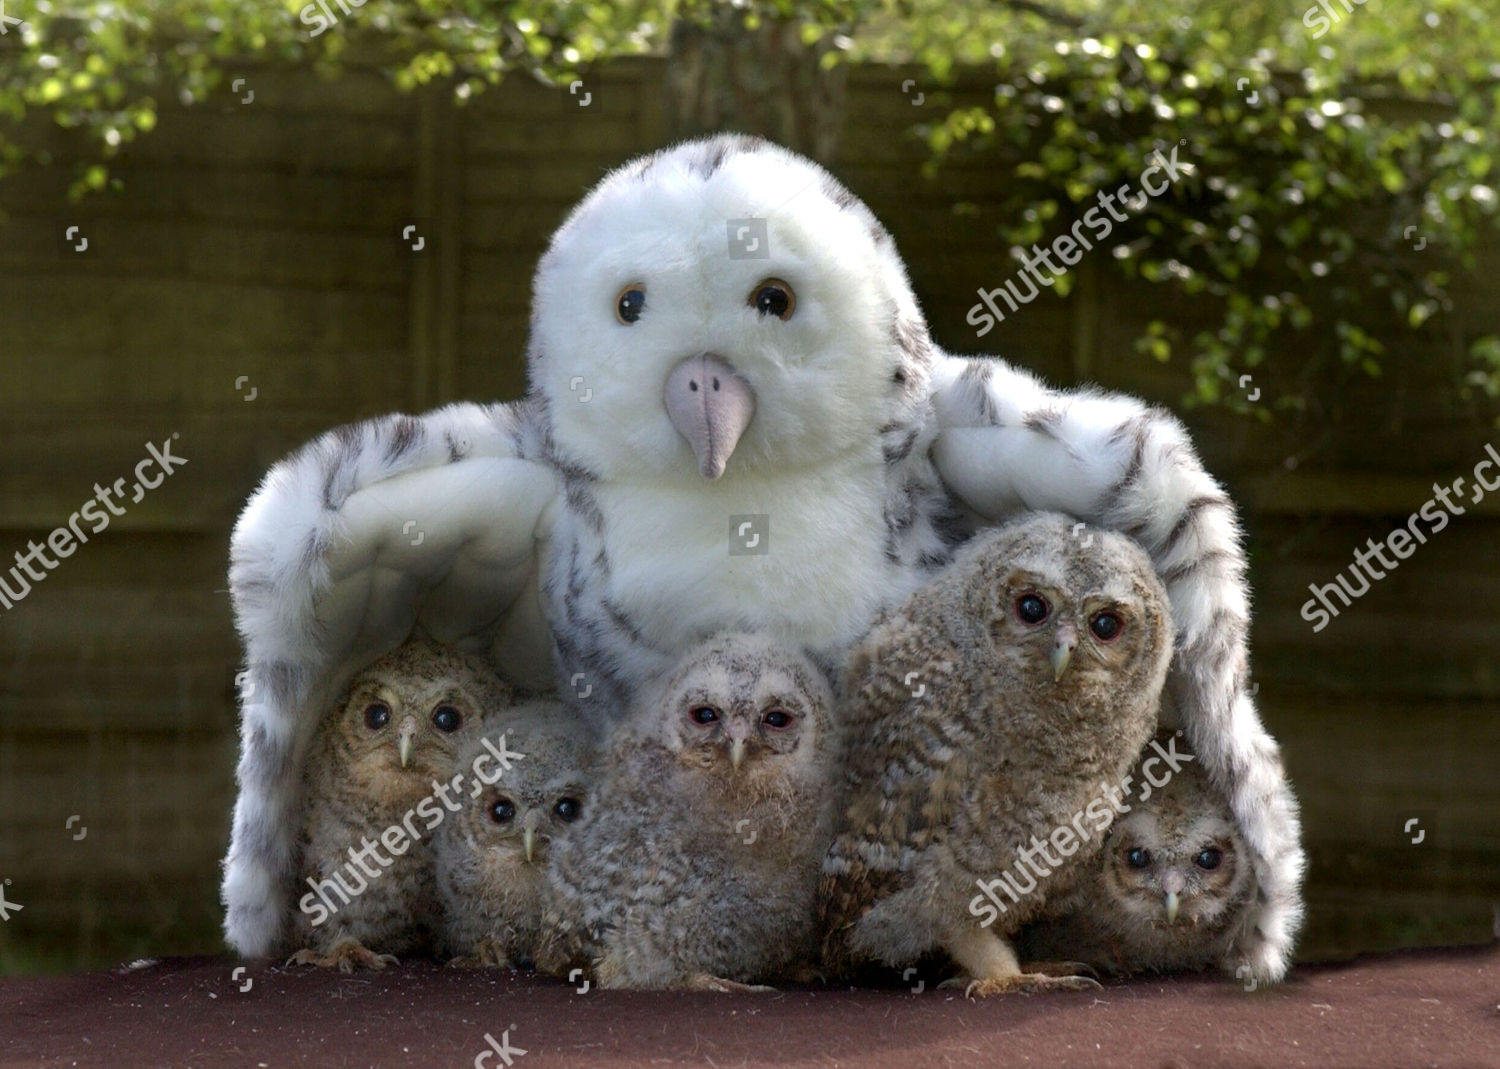 cuddly owls